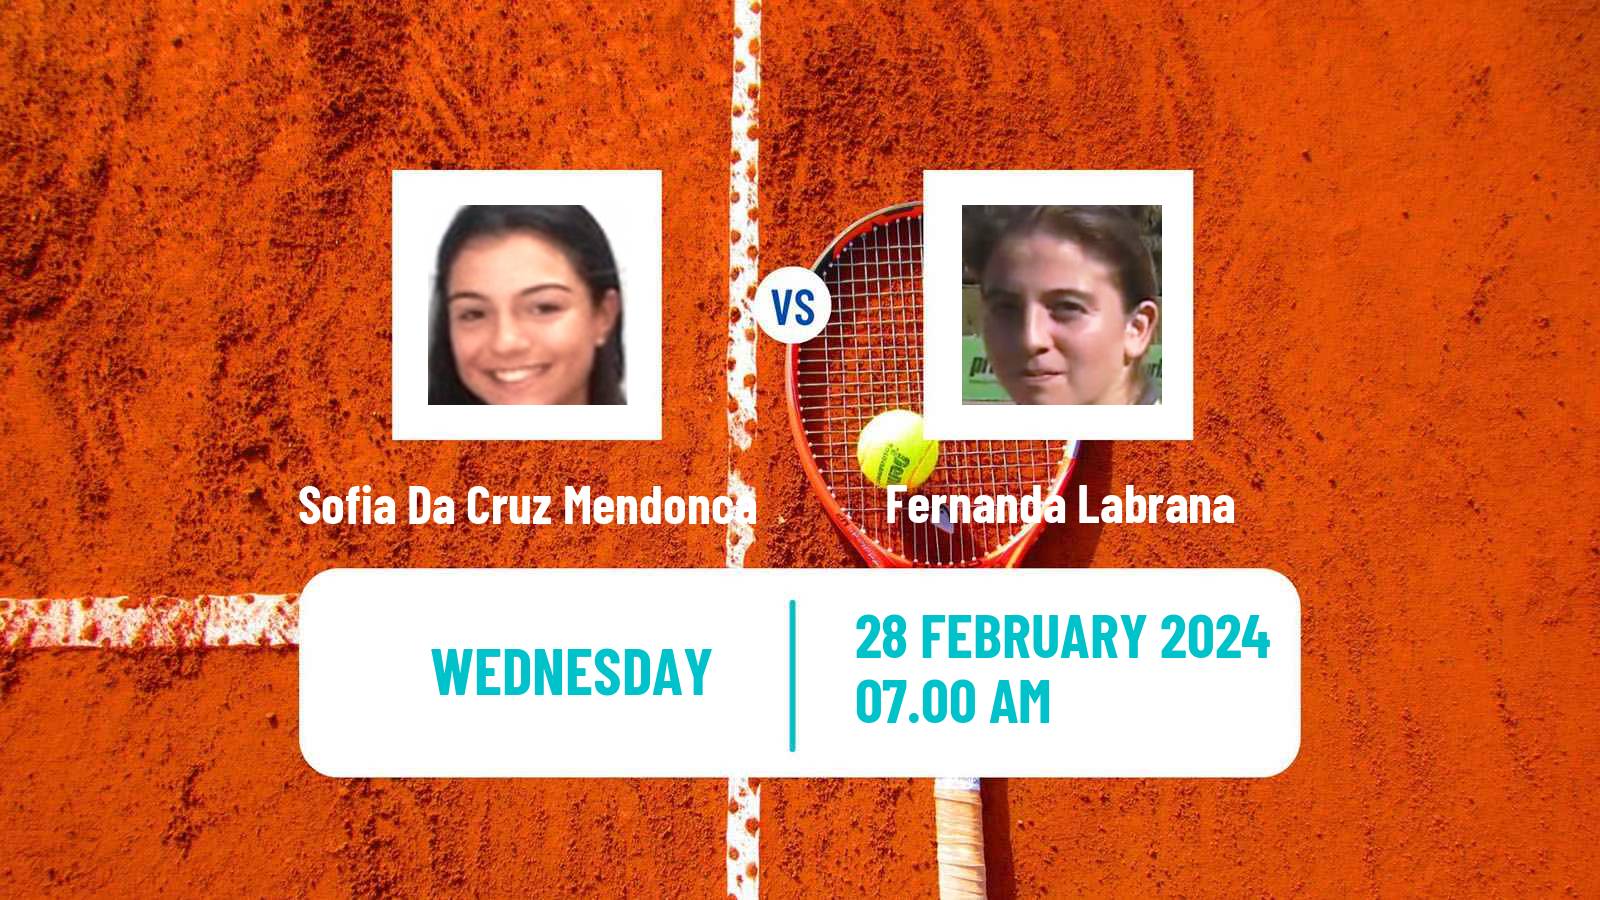 Tennis ITF W15 Tucuman Women Sofia Da Cruz Mendonca - Fernanda Labrana